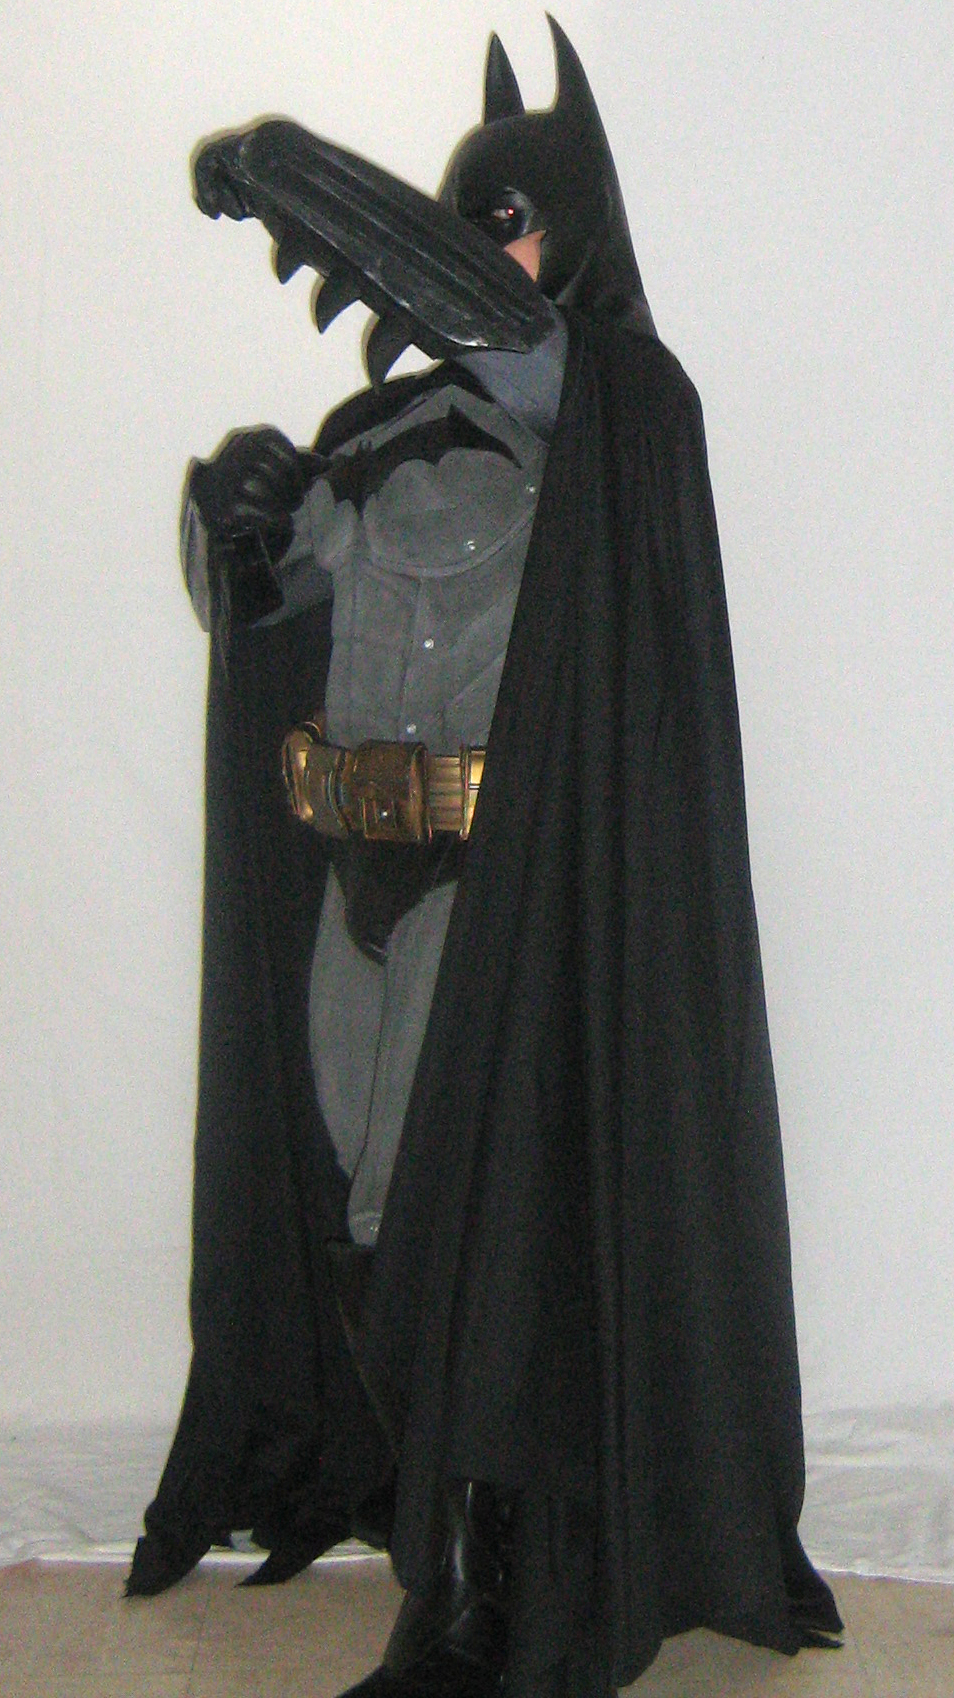 Batman Arkham Asylum Suit Replica by Syl001 on DeviantArt